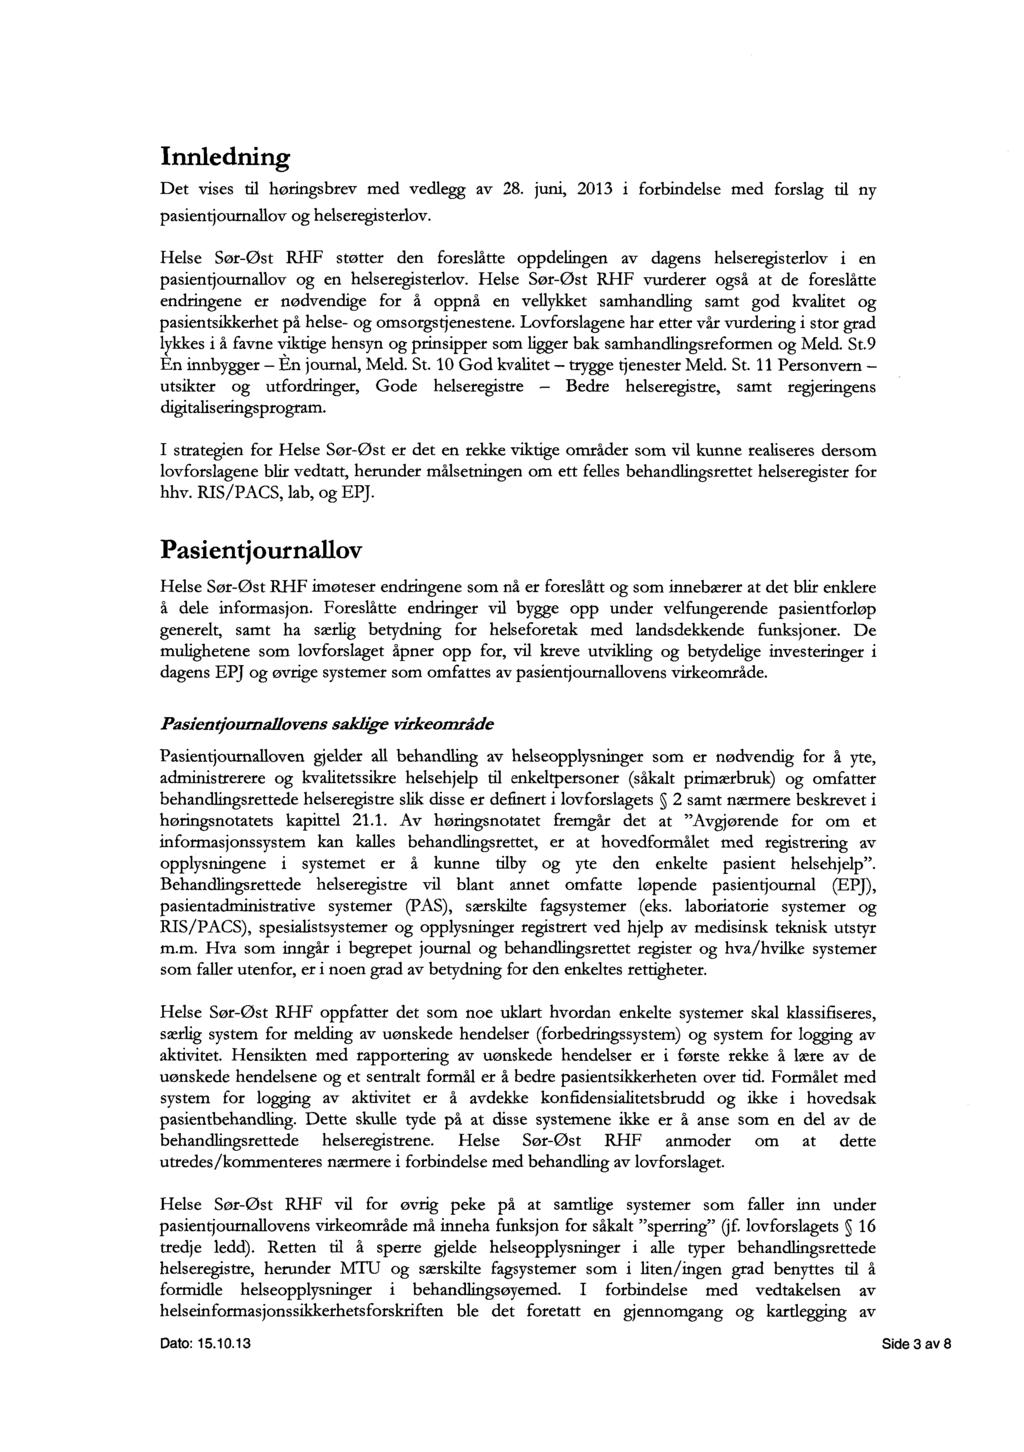 Innledning Det vises til høringsbrev med vedlegg av 28. juni, 2013 i forbindelse med forslag til ny pasientjournallov og helseregisterlov.